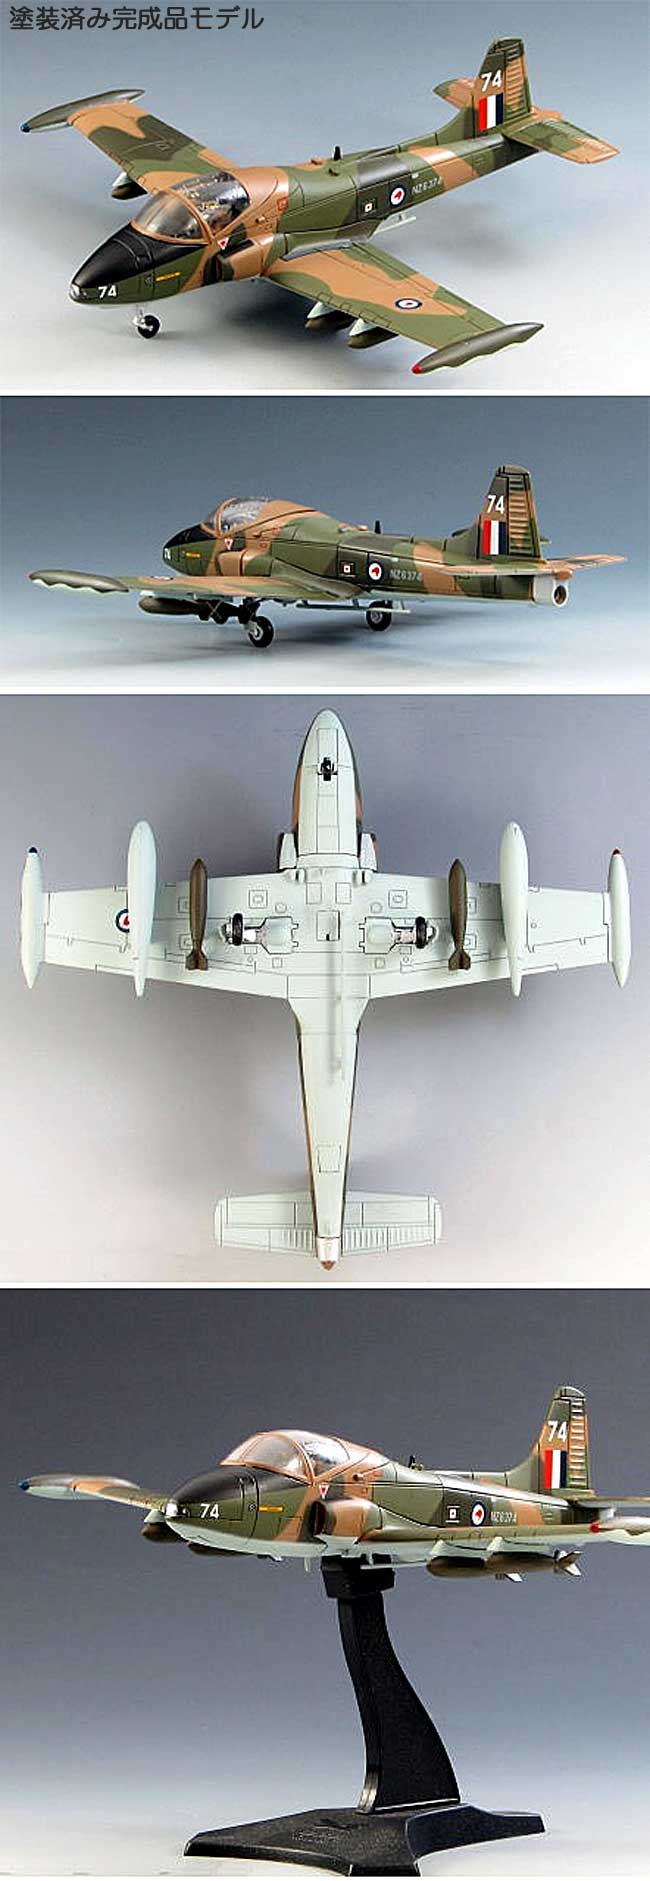 BAC167 ストライクマスター ニュージーランド空軍 完成品 (スカイマックス 1/72 完成品モデル No.SM7002) 商品画像_1